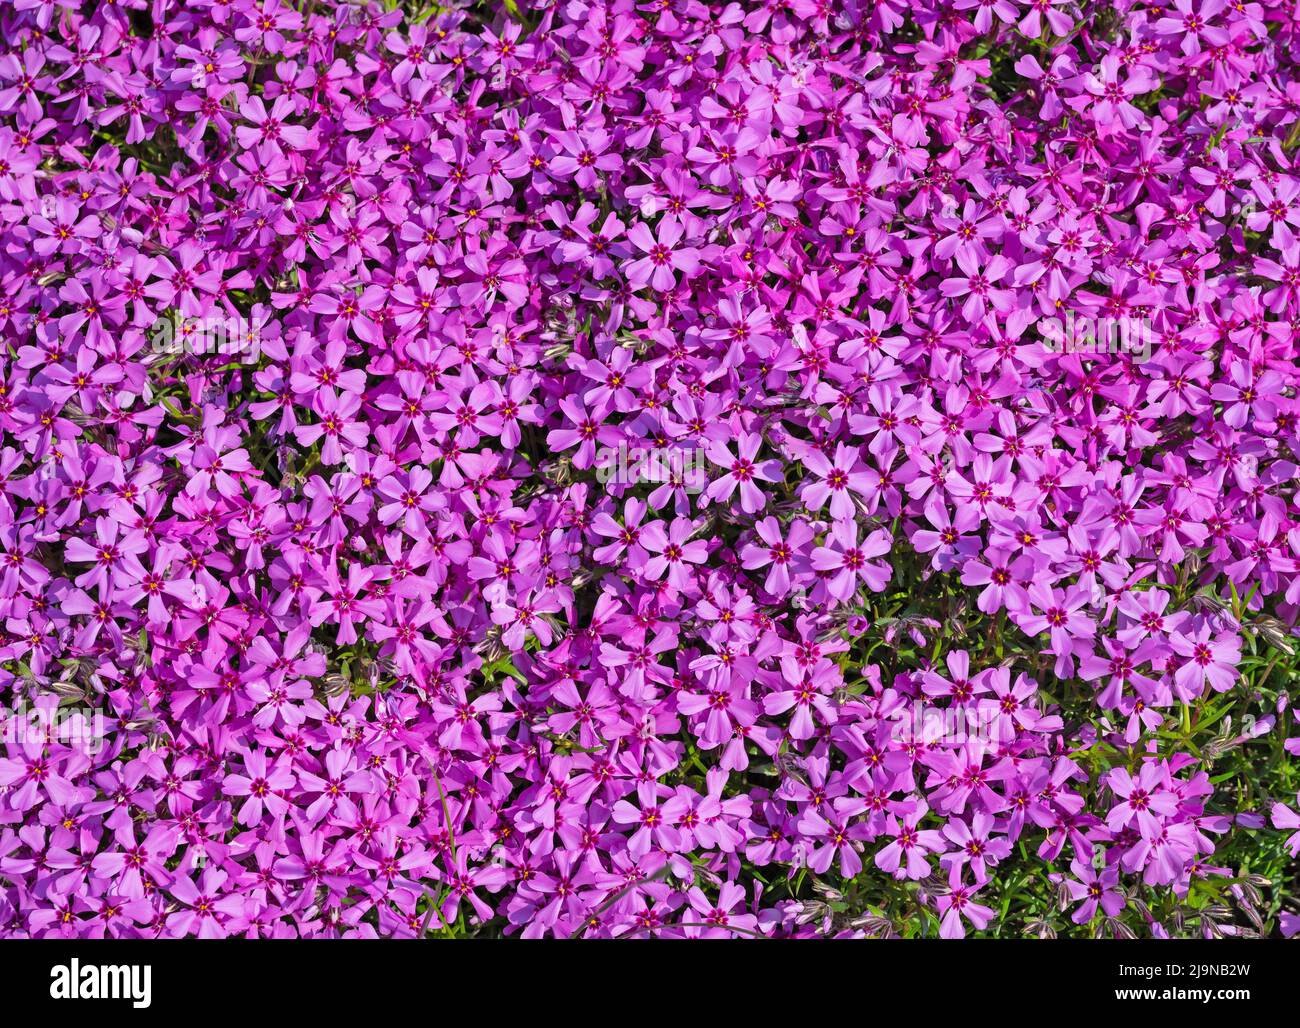 Flowering cushion phlox, Phlox subulata Stock Photo